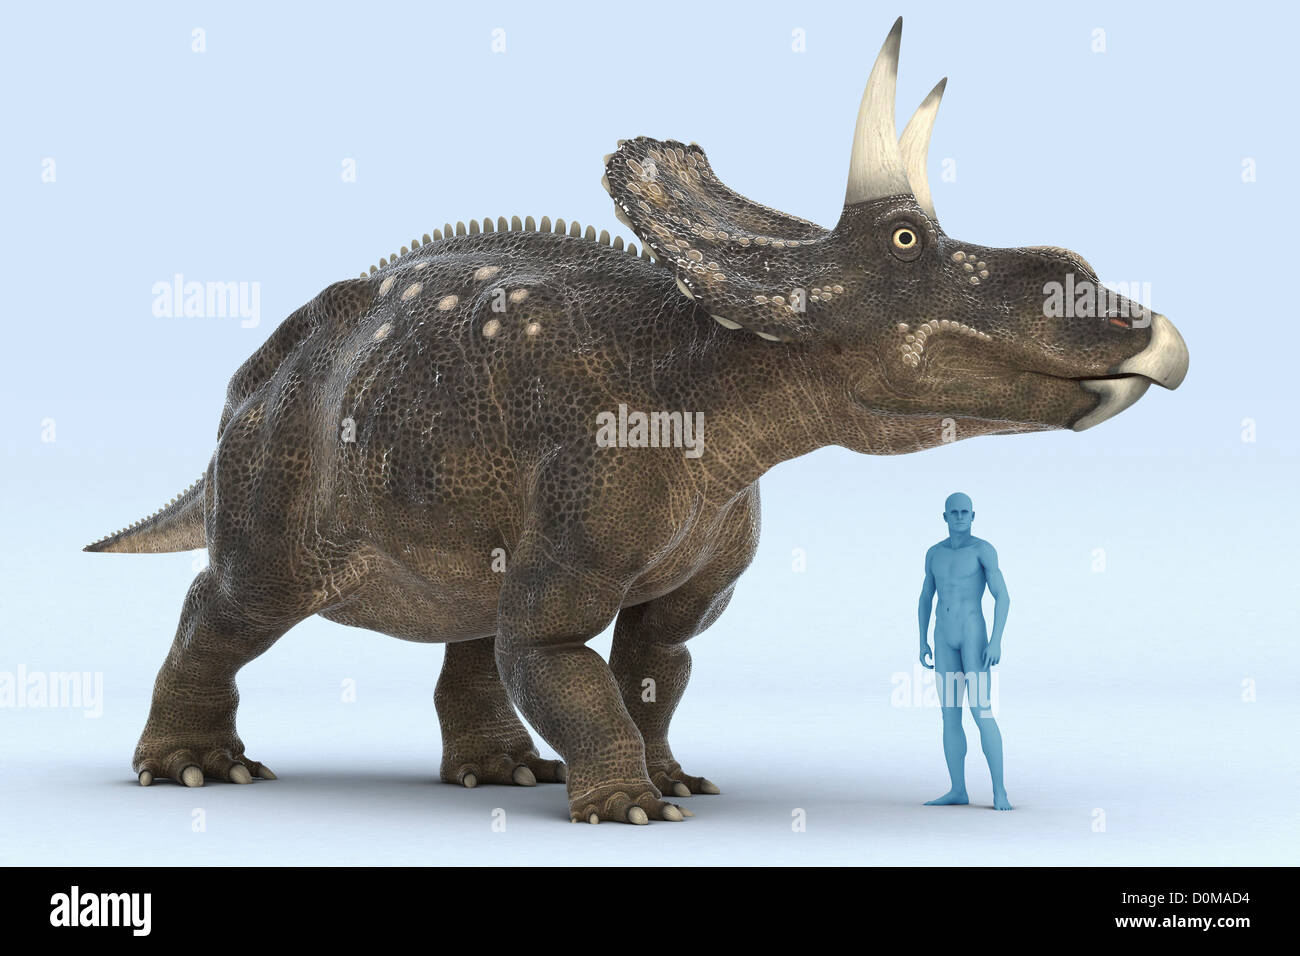 Modell eines Diceratops Dinosauriers zeigt die Größe im Vergleich zu einem Menschen. Stockfoto